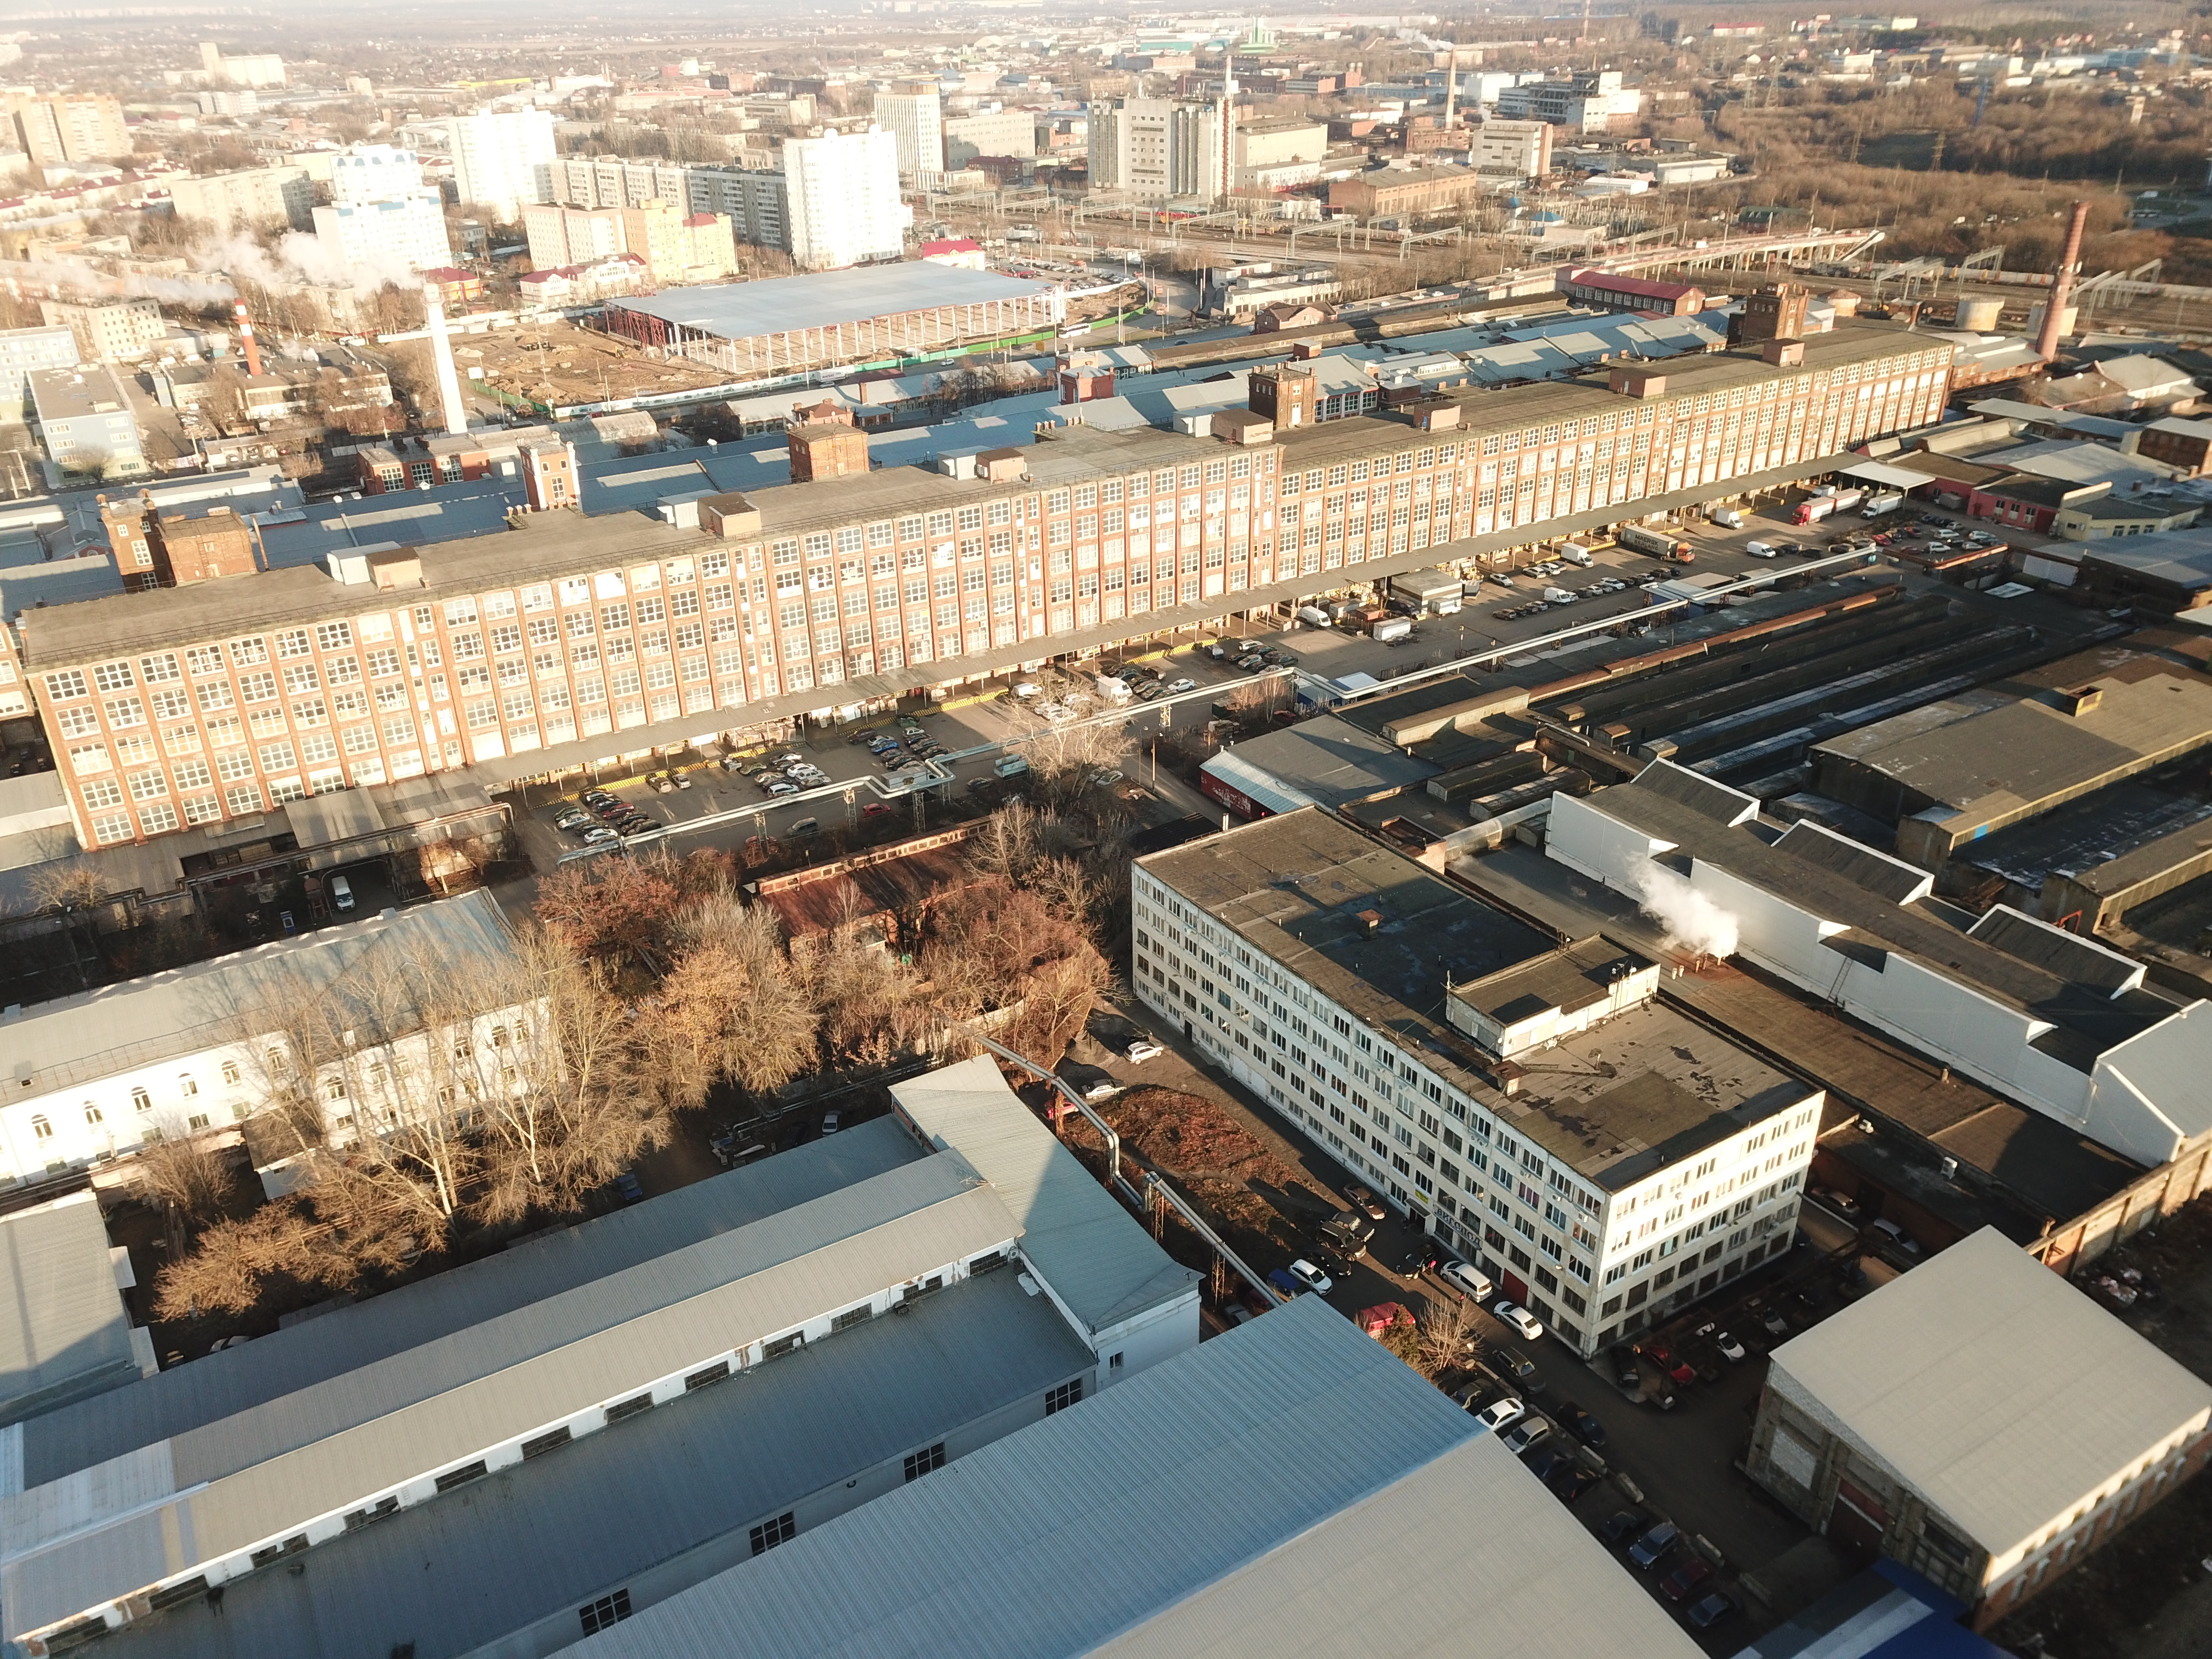 В ПОДОЛЬСКЕ ПРОДАЛИ 54 000 КВ. М СКЛАДОВ Skladman USG выступил консультантом по продаже производственно-складского комплекса.   